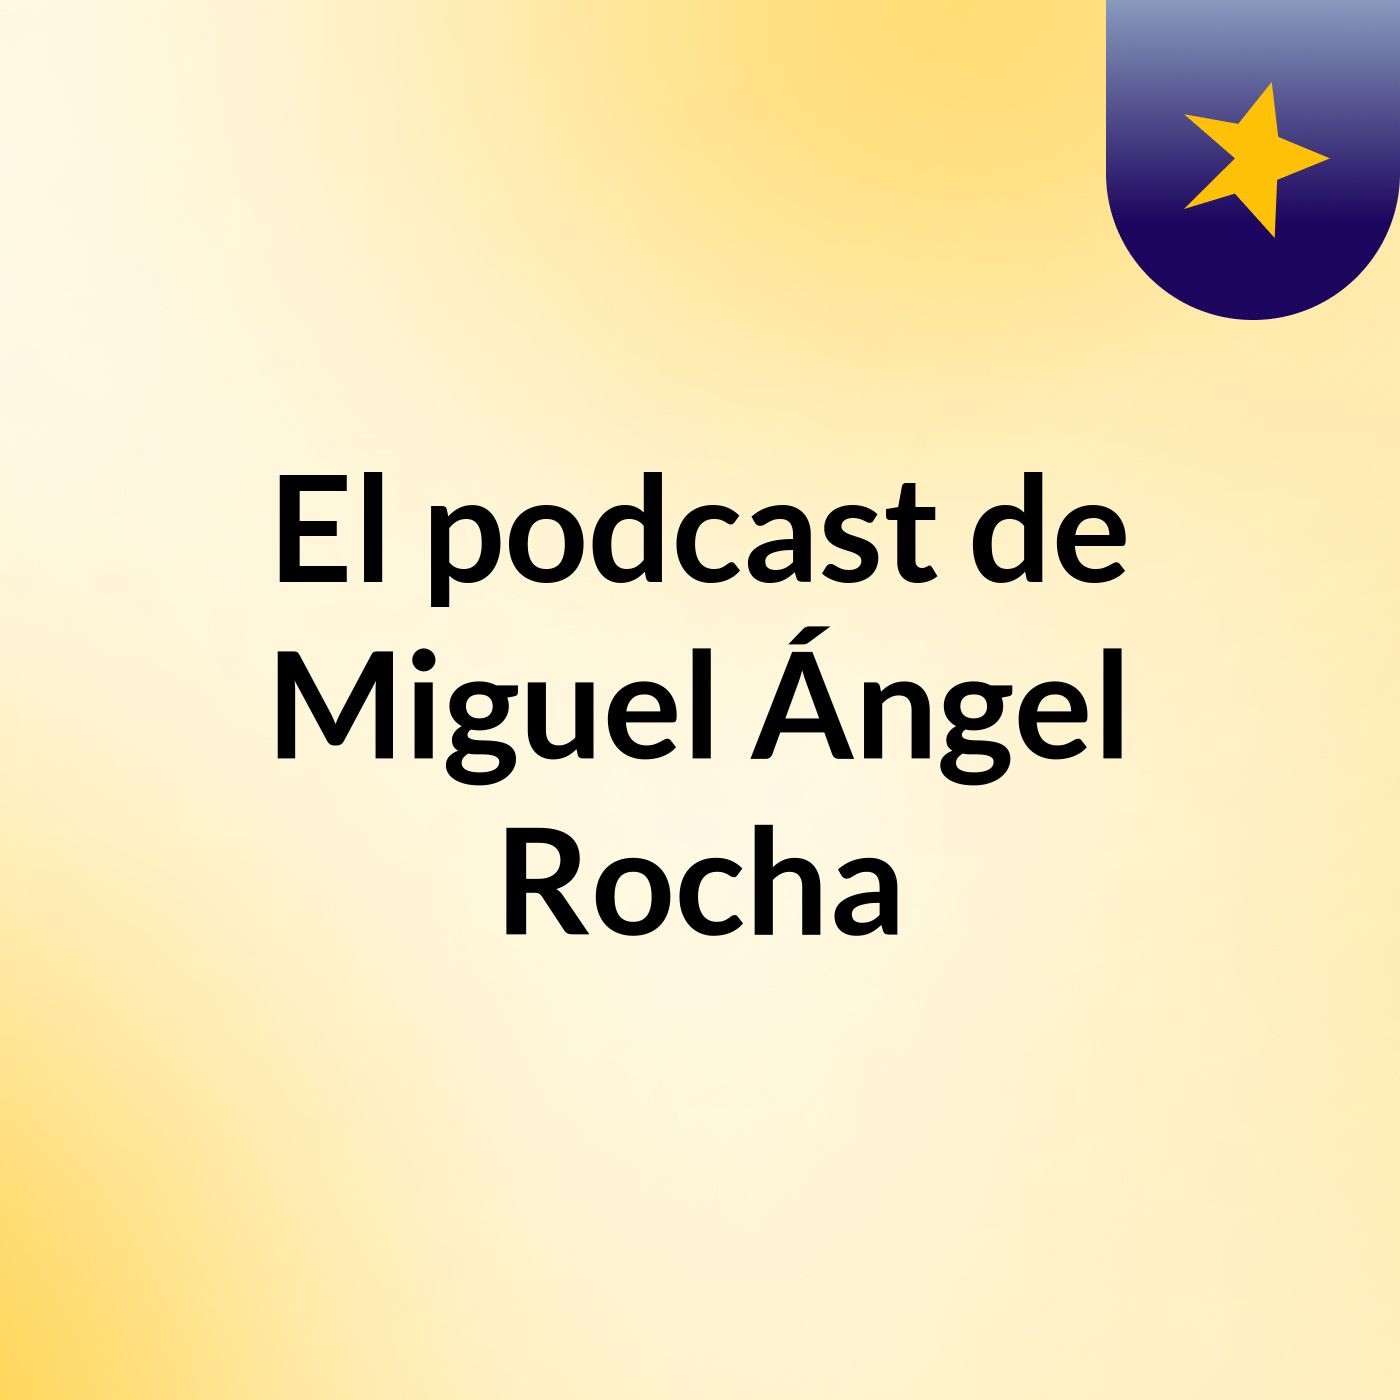 El podcast de Miguel Ángel Rocha